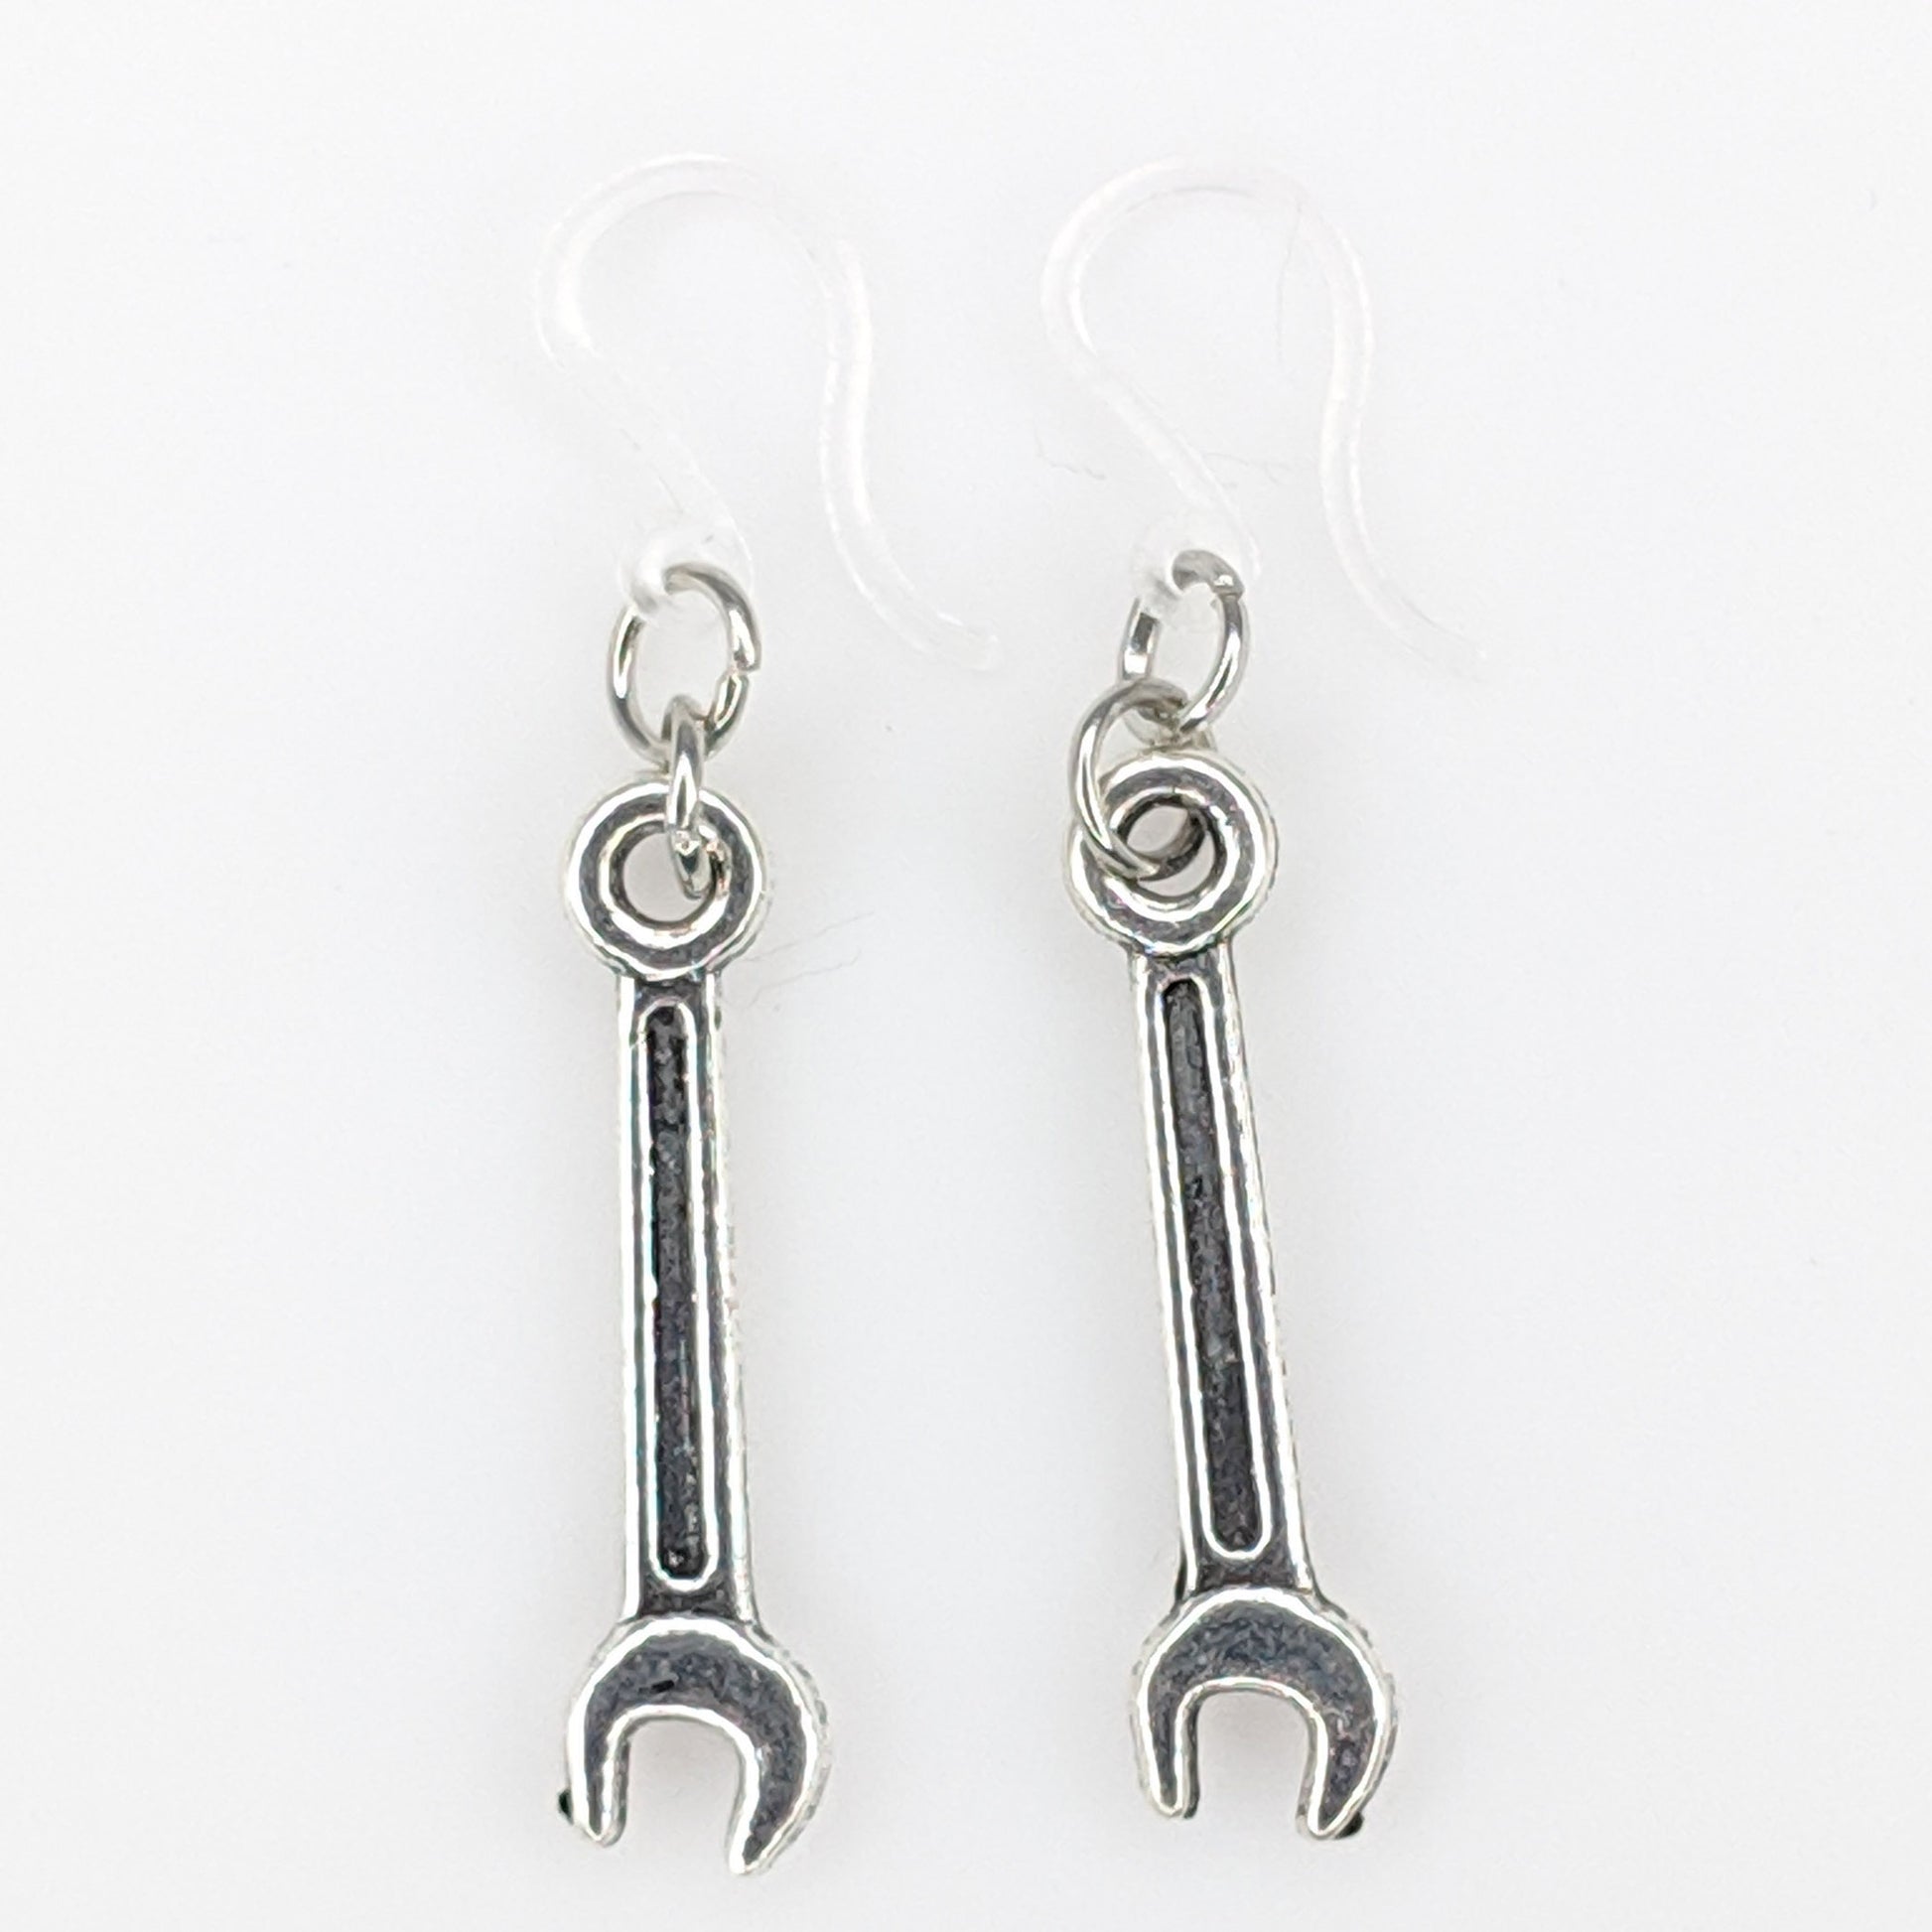 Wrench Earrings (Dangles) - silver